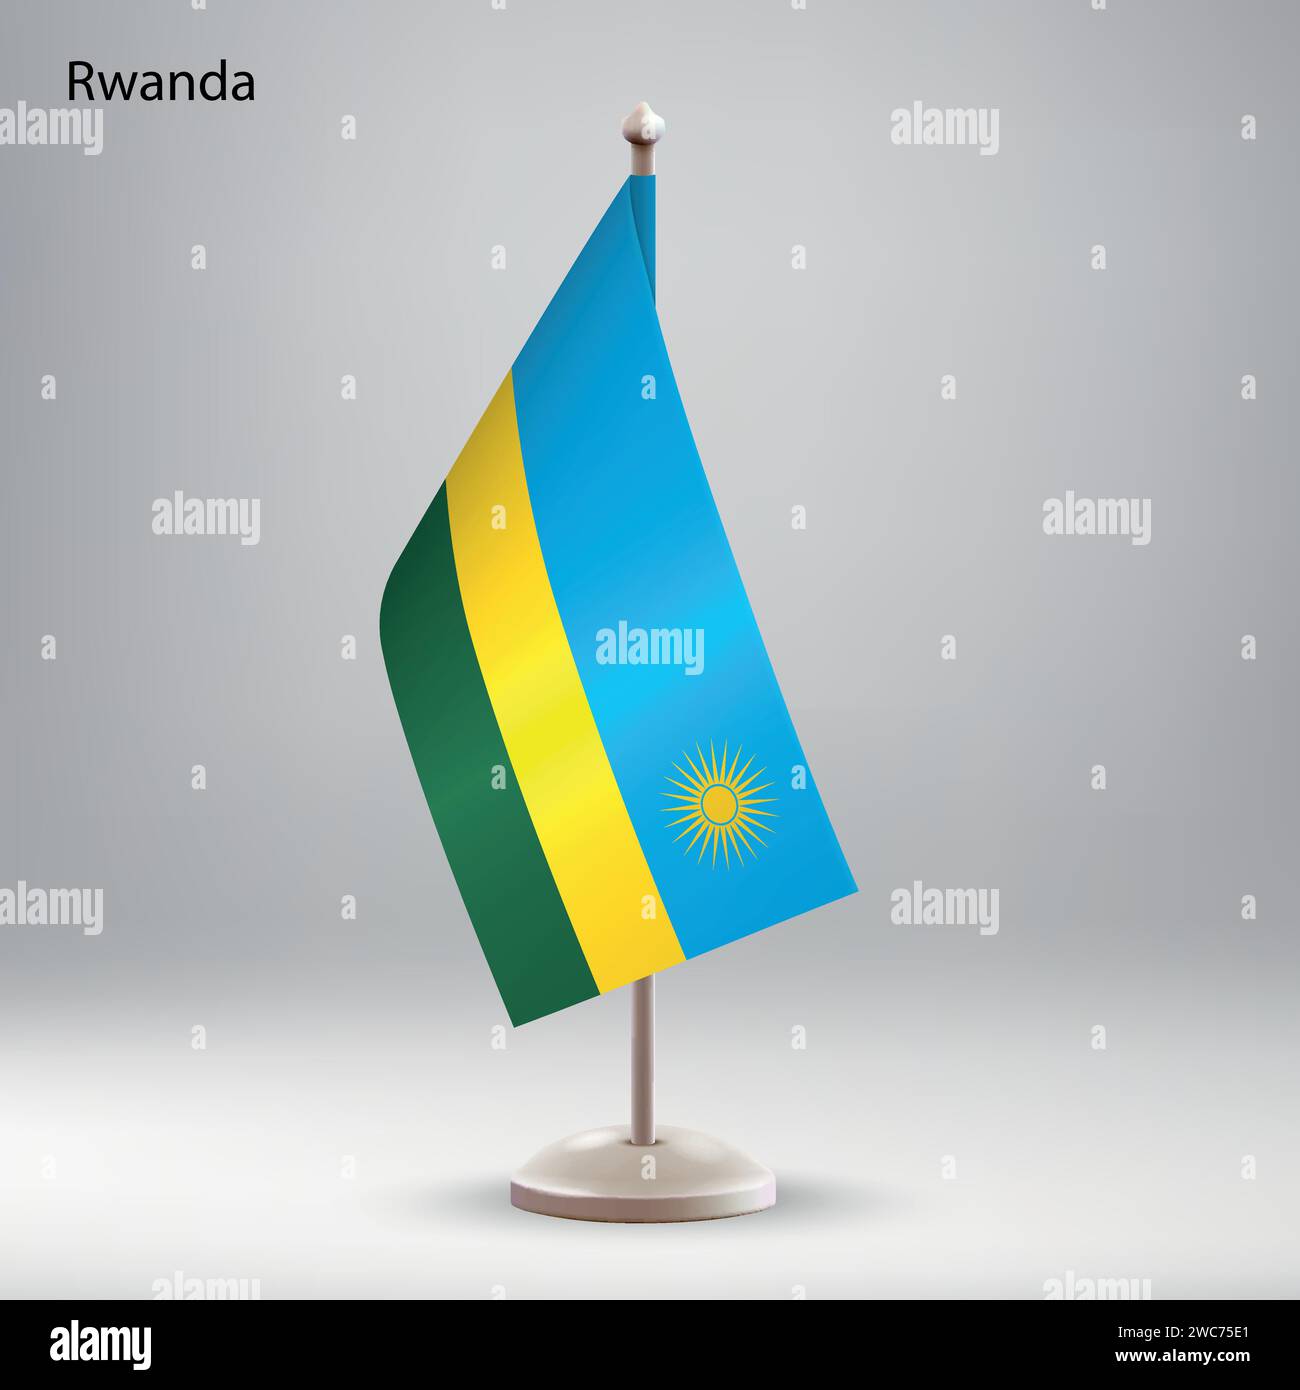 Die Flagge Ruandas hängt an einem Fahnenständer. Verwendbar für Gipfelpräsentationen oder Konferenzen Stock Vektor